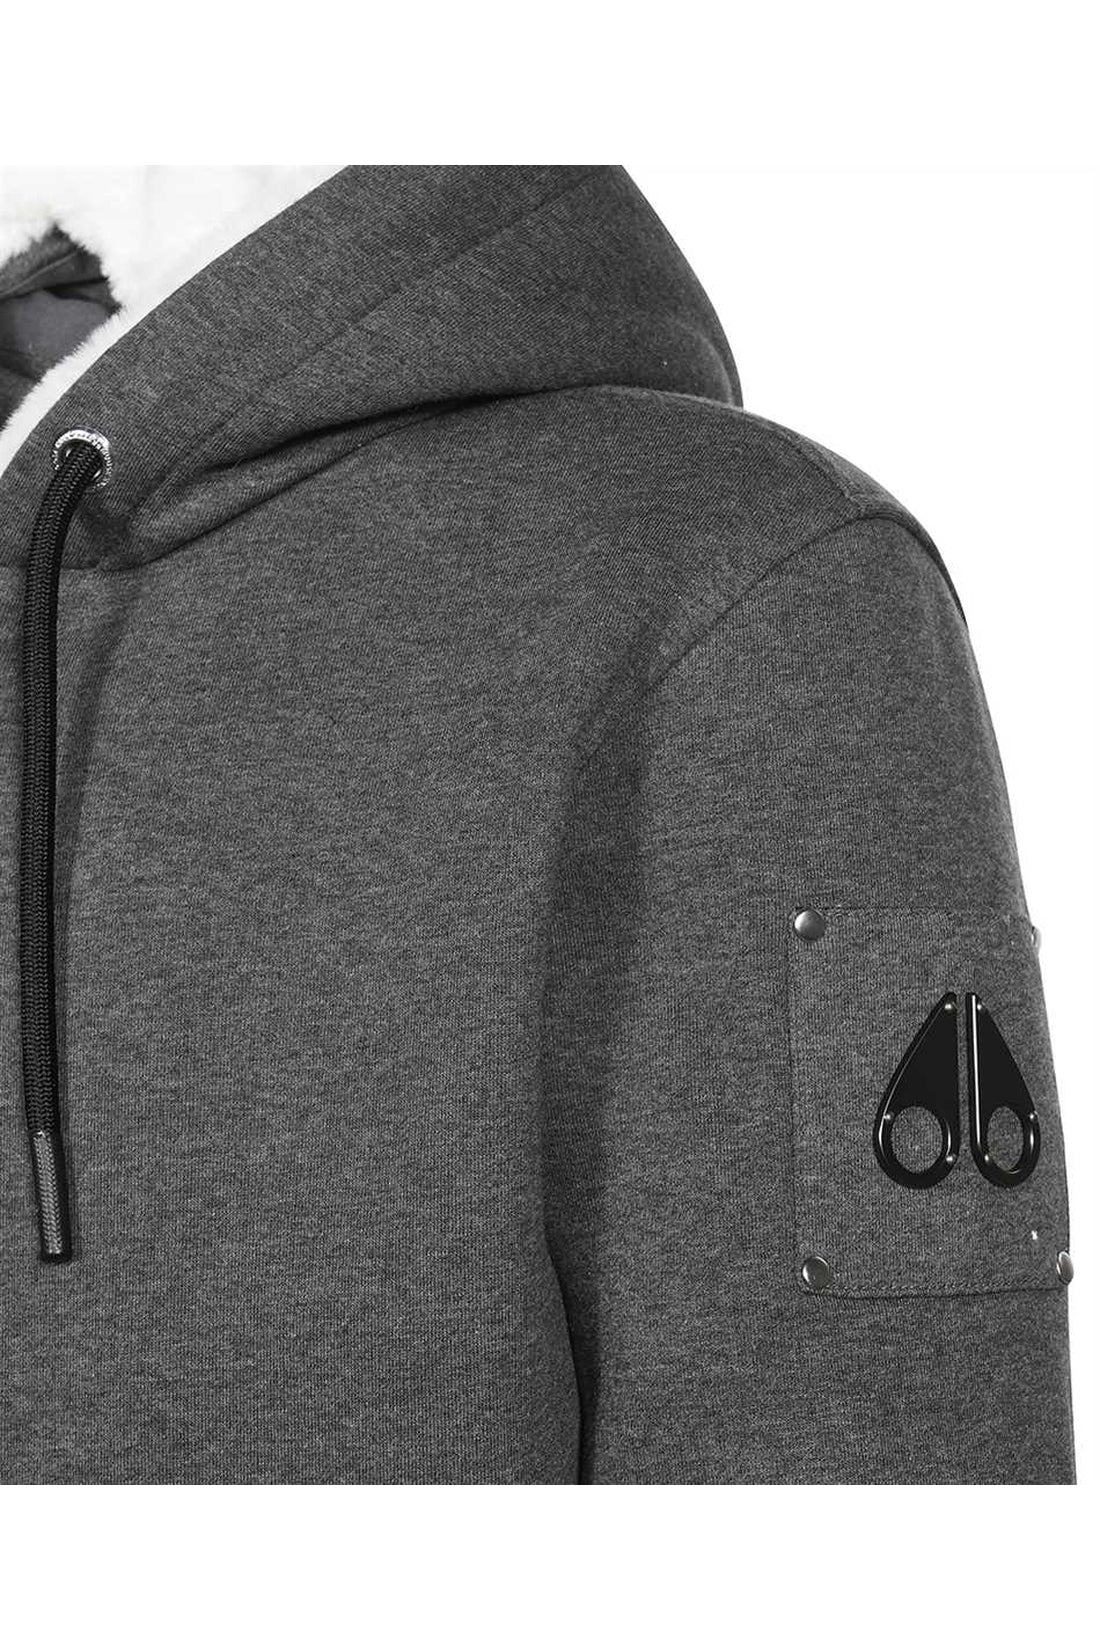 Moose Knuckles-OUTLET-SALE-Full zip hoodie-ARCHIVIST